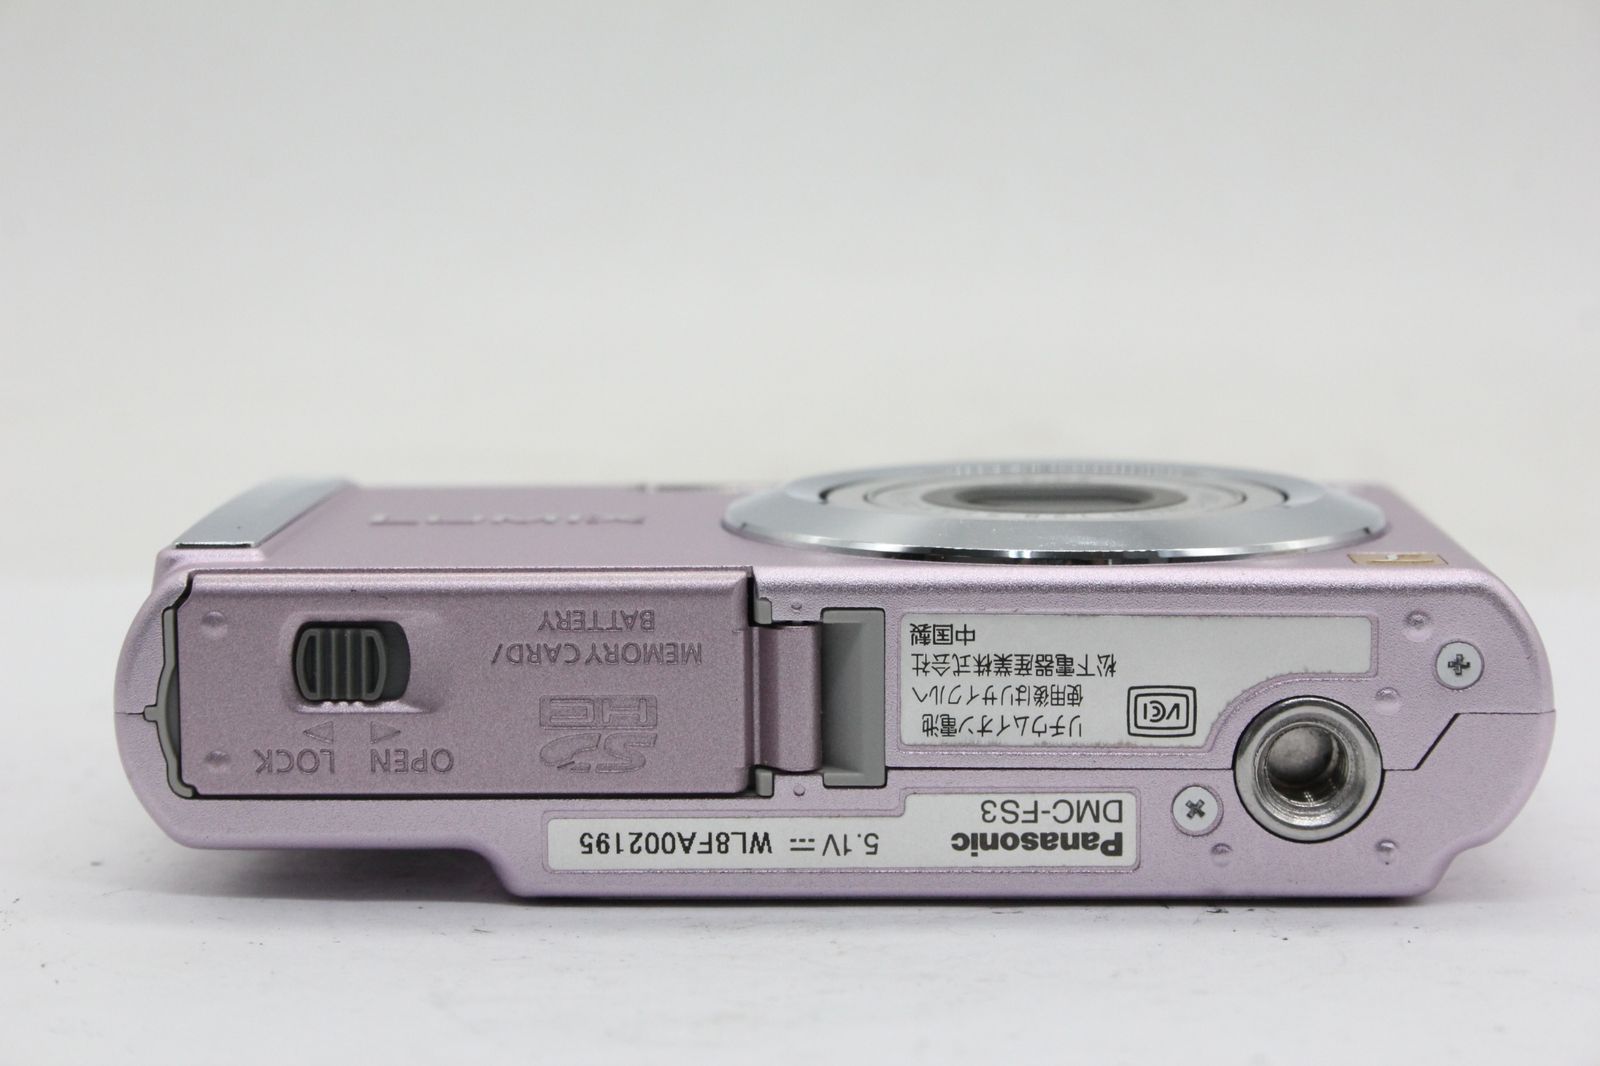 Panasonic 【返品保証】 パナソニック Panasonic LUMIX DMC-FS3 ピンク バッテリー チャージャー付き コンパクトデジタルカメラ v2155